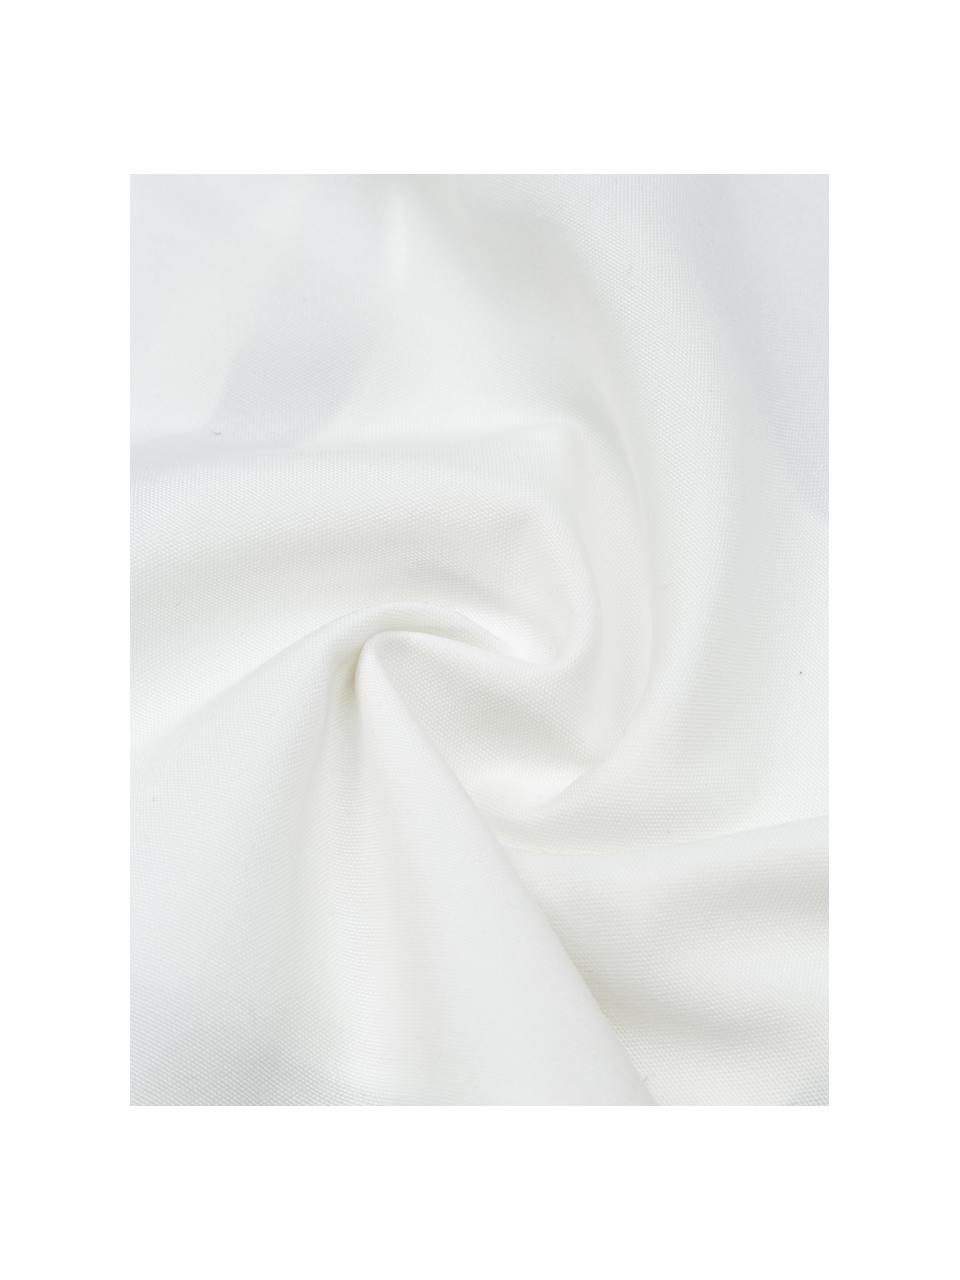 Kussenhoes Arte in zwart/wit, 100% polyester, Wit, zwart, B 45 x L 45 cm